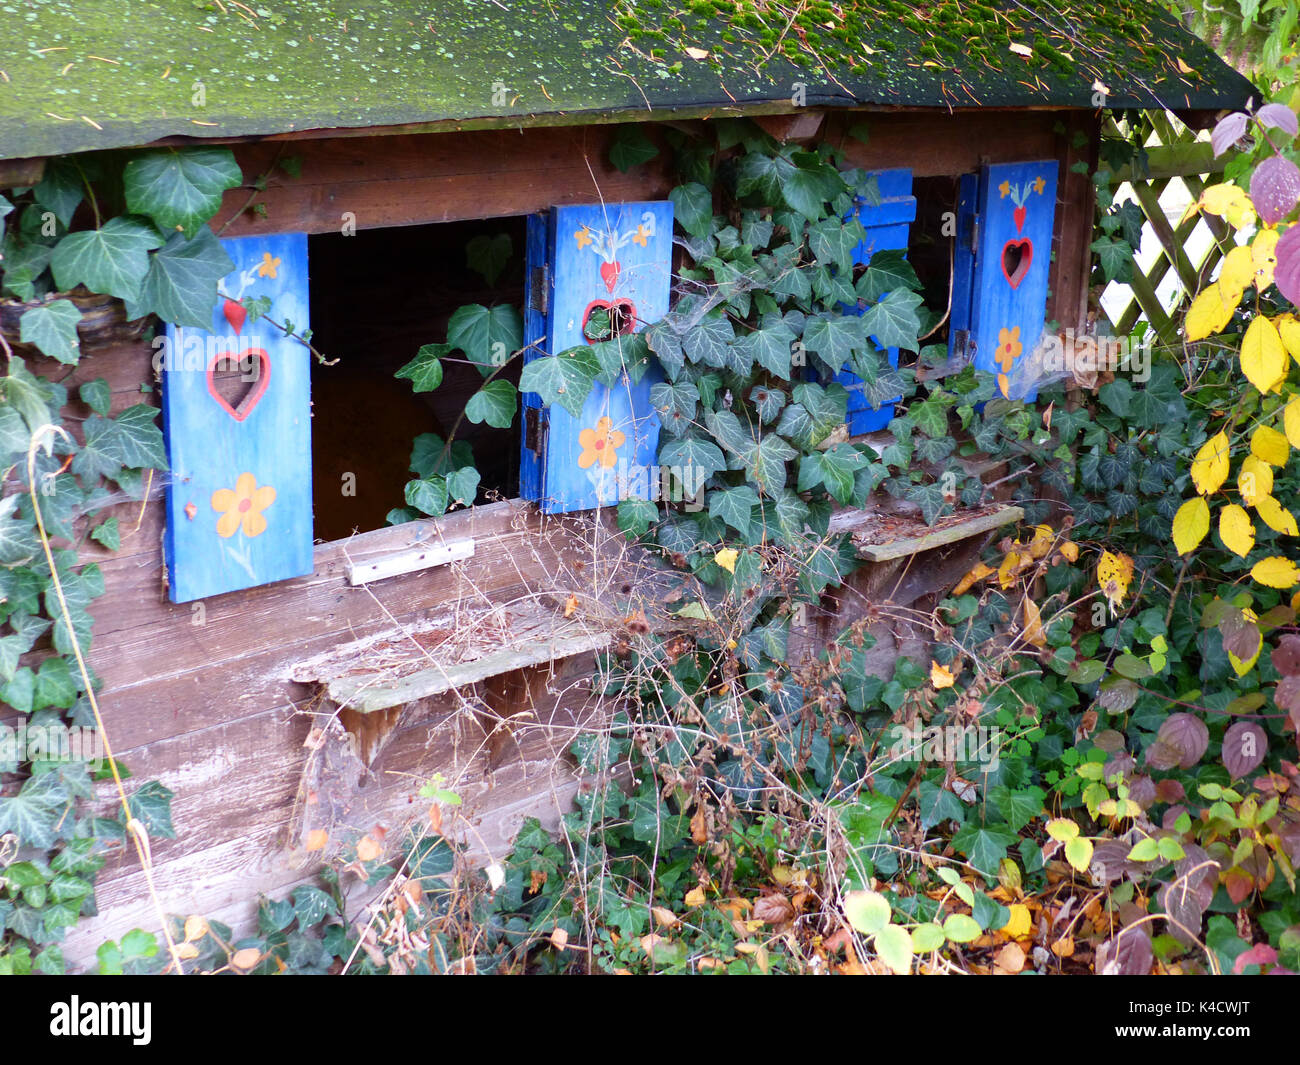 Garten Haus, Kinder Spielhaus In einem verwunschenen Ecke im herbstlichen  Garten Stockfotografie - Alamy